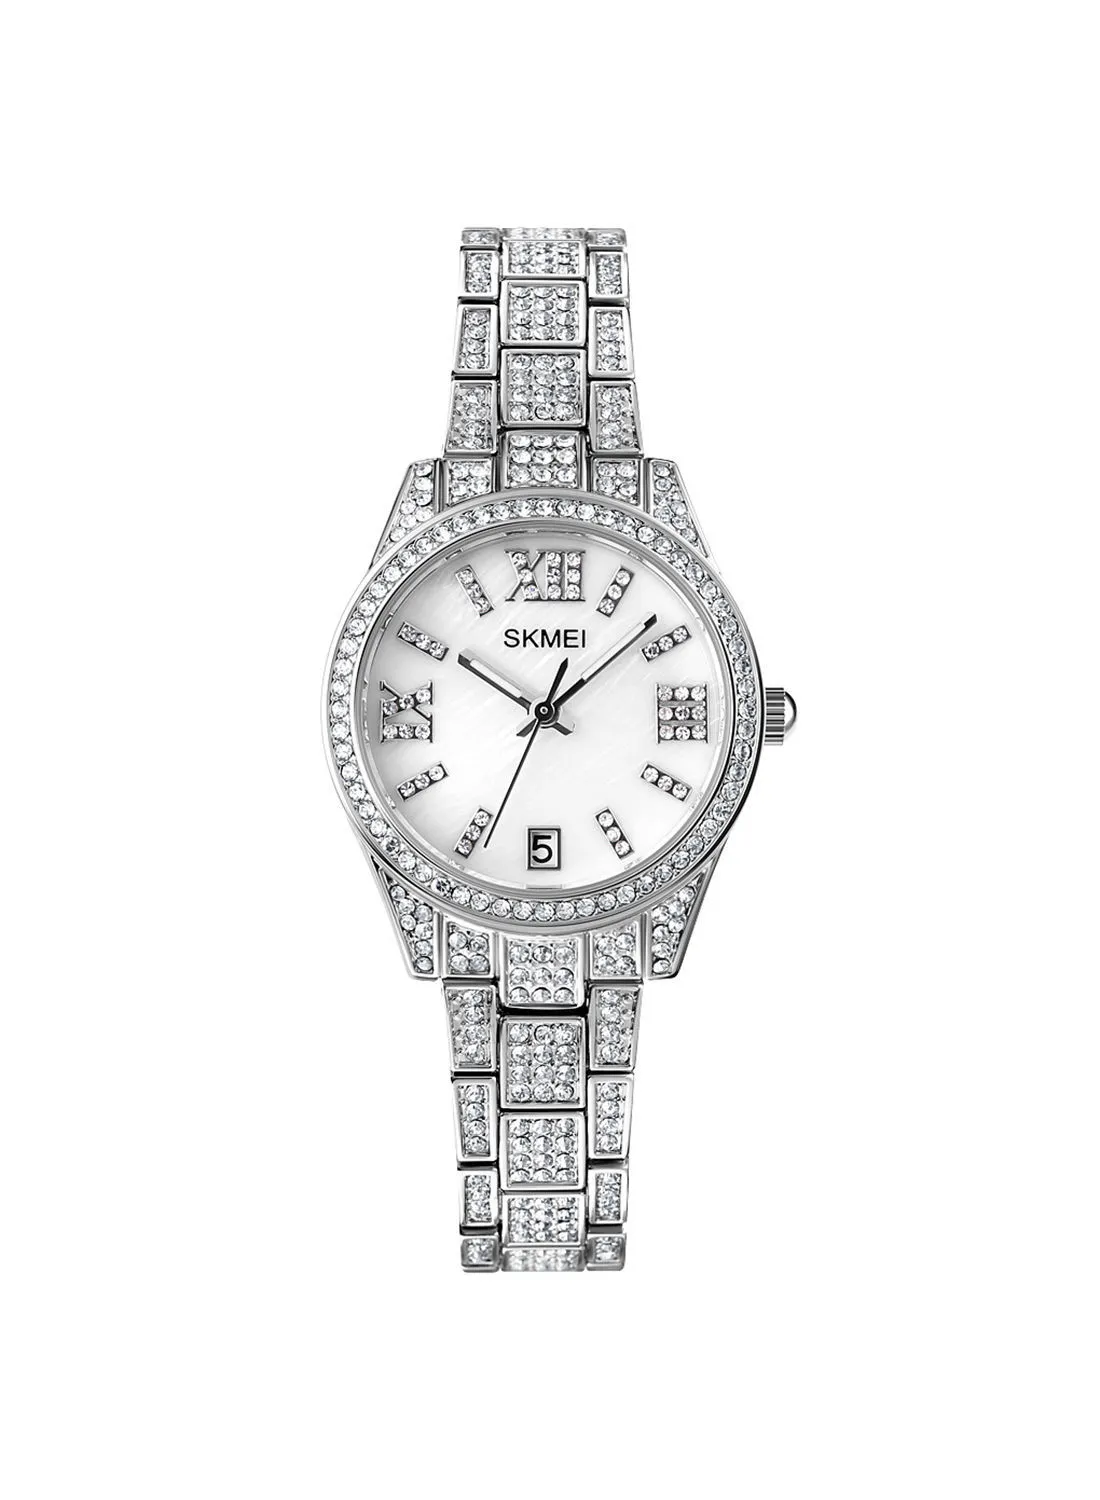 SKMEI Women's Diamond Quartz Watch 1471